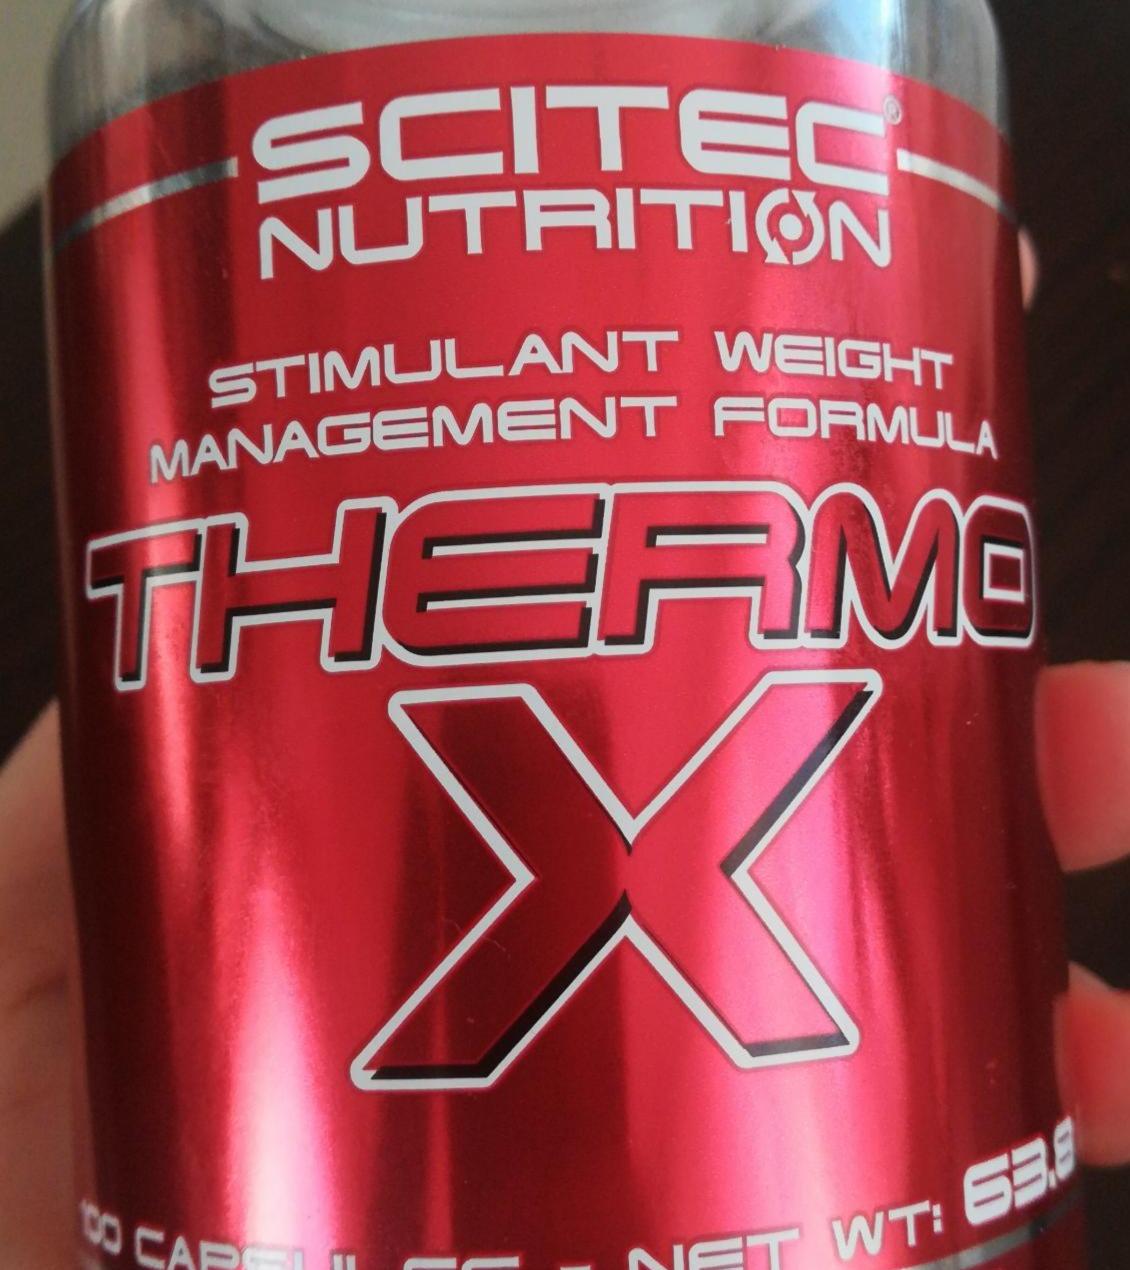 Fotografie - Thermo X Scitec Nutrition